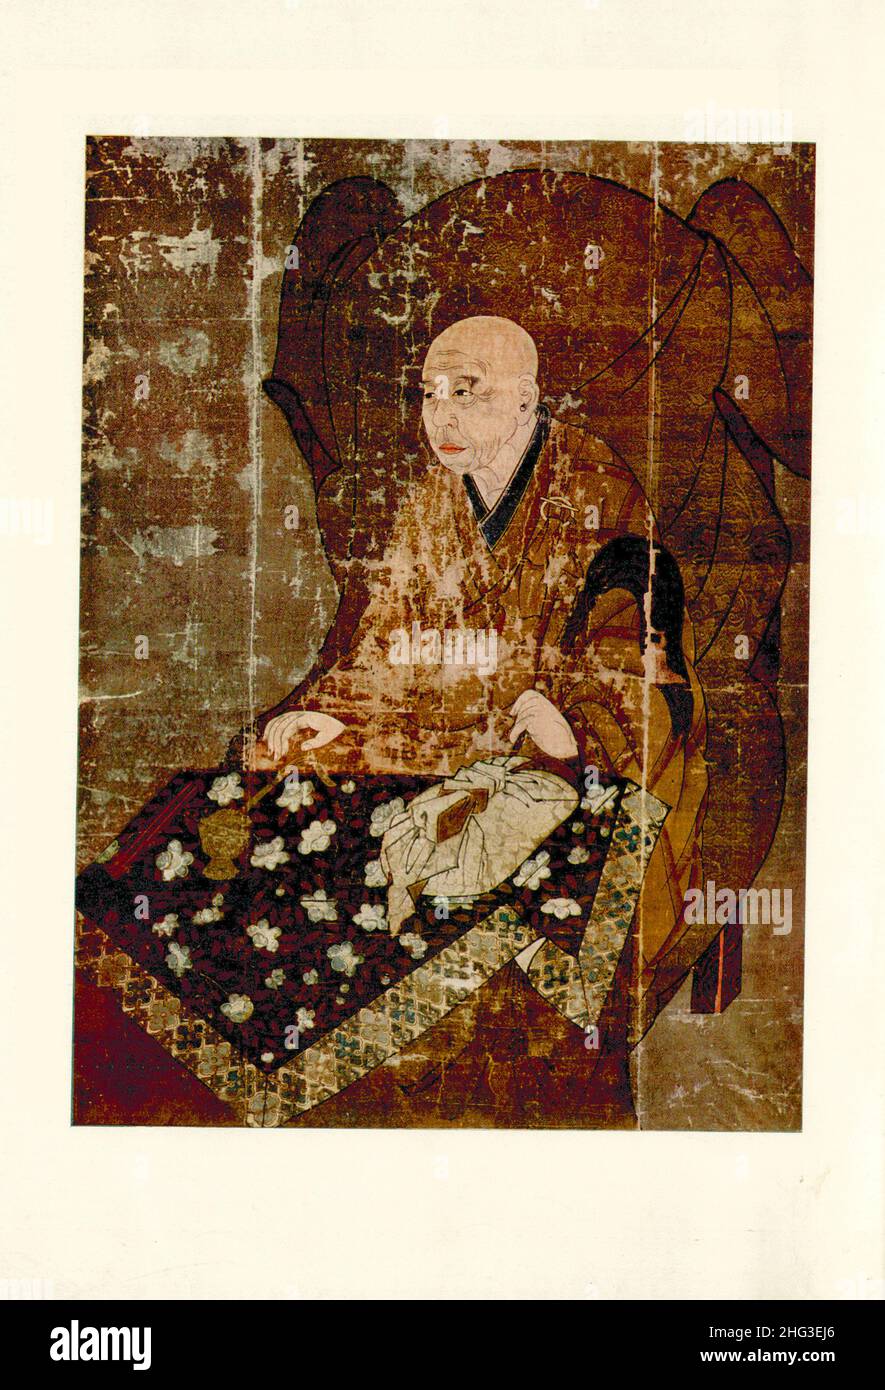 Pittura medievale cinese: Ritratto di un sacerdote. Dinastia Qing, Cina. Riproduzione di illustrazioni del libro di 1912. Foto Stock